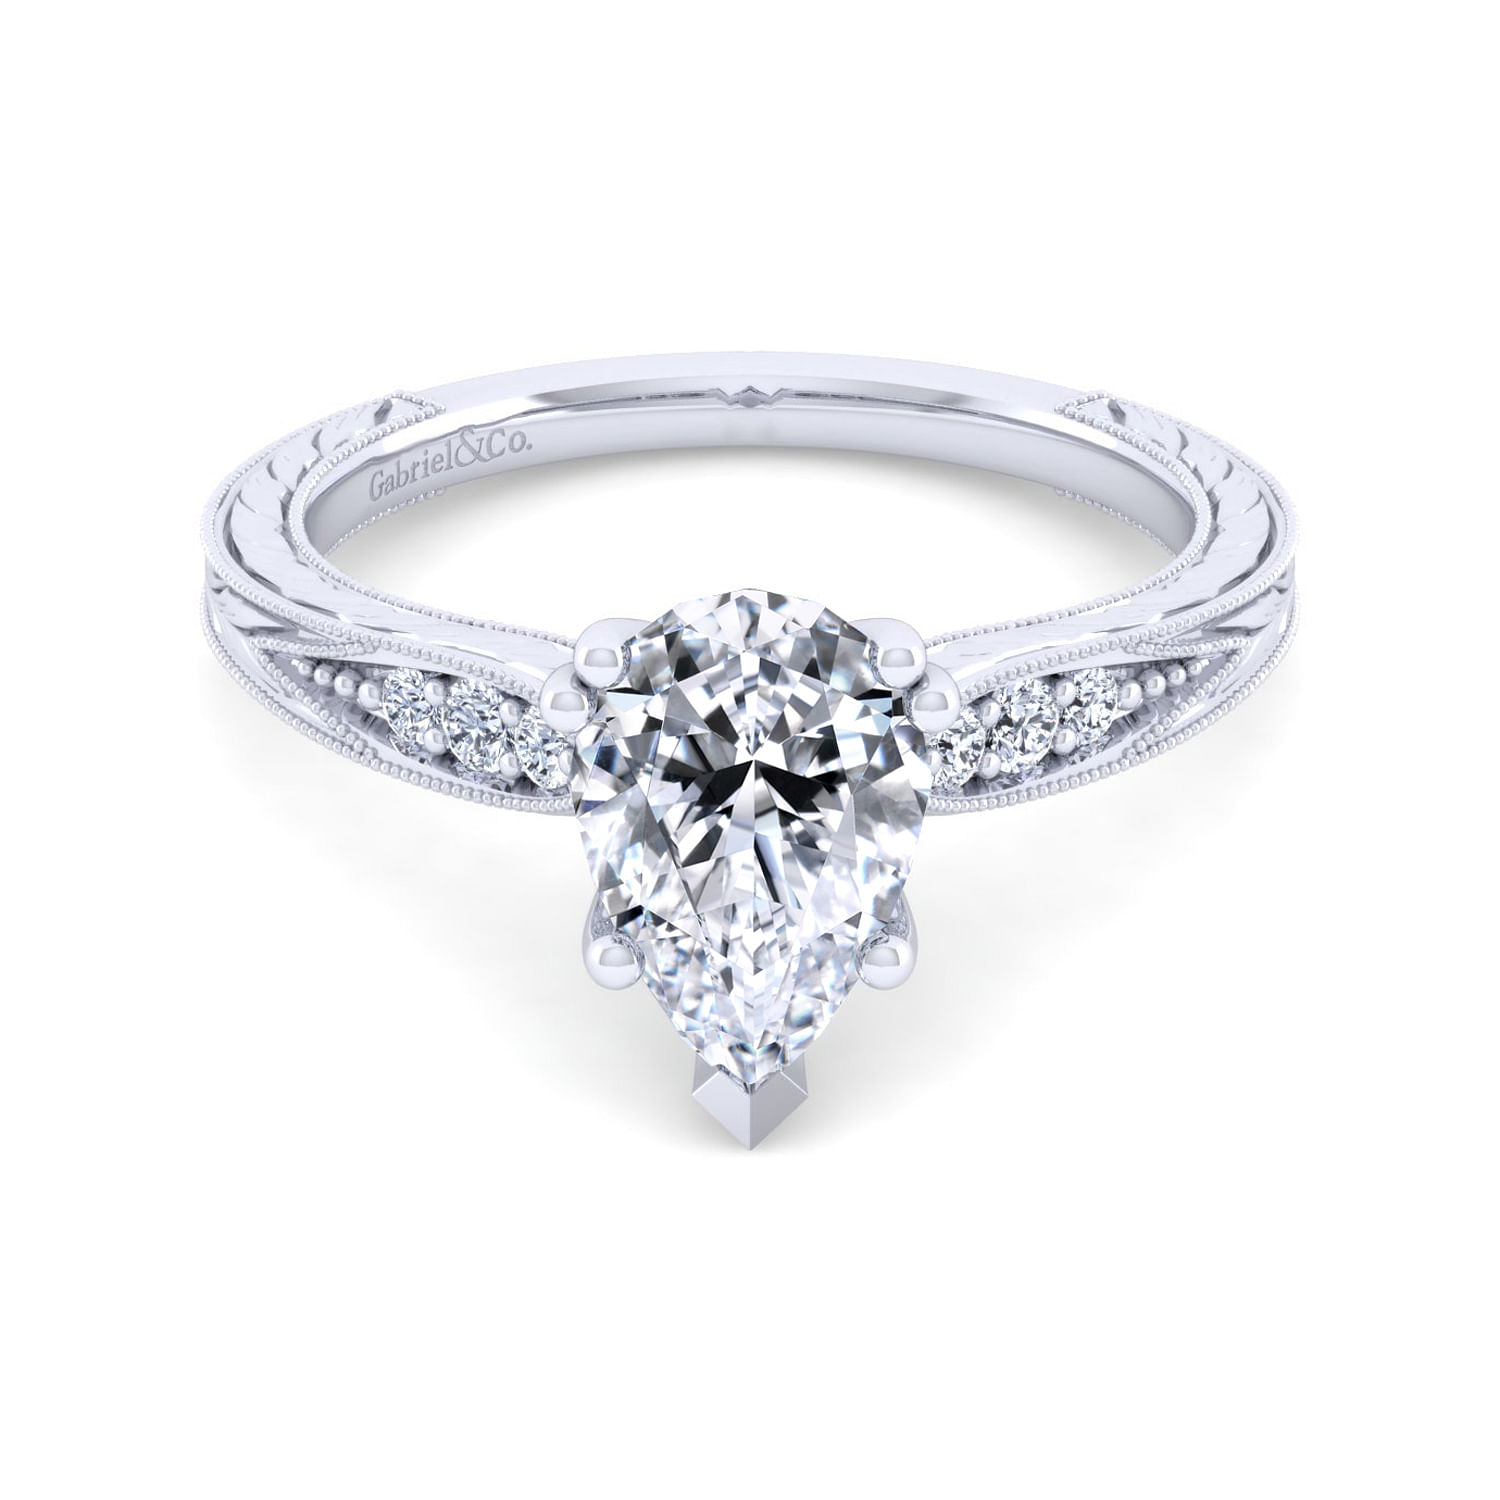 Vintage Inspired 14K White Gold Pear Shape Diamond Engagement Ring